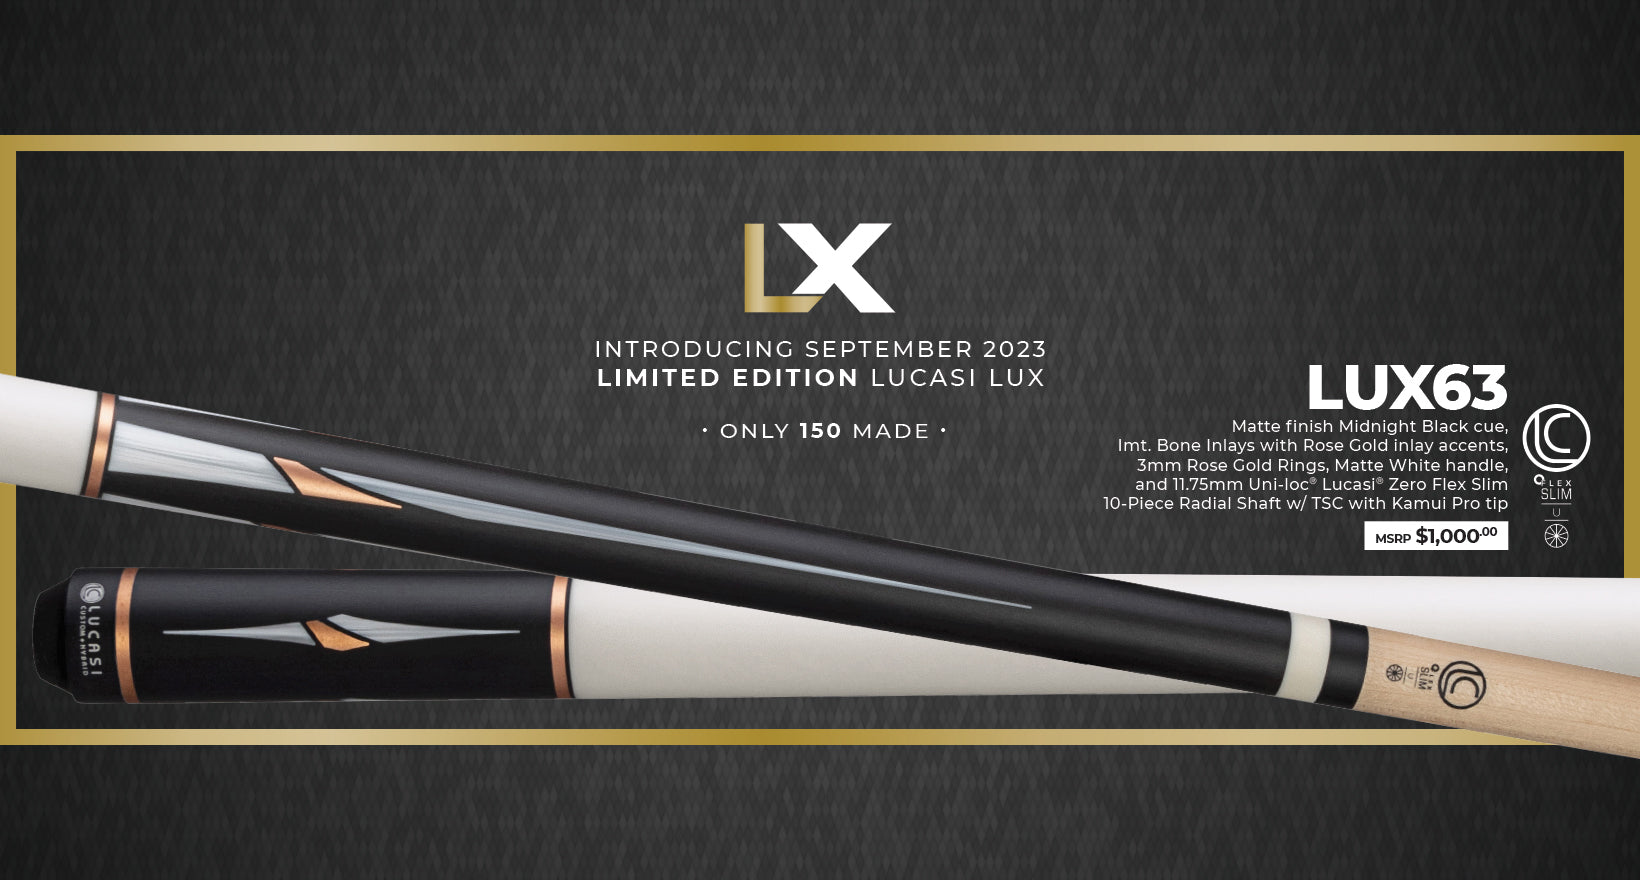 Lucasi Lux® LUX63 Pool Cue